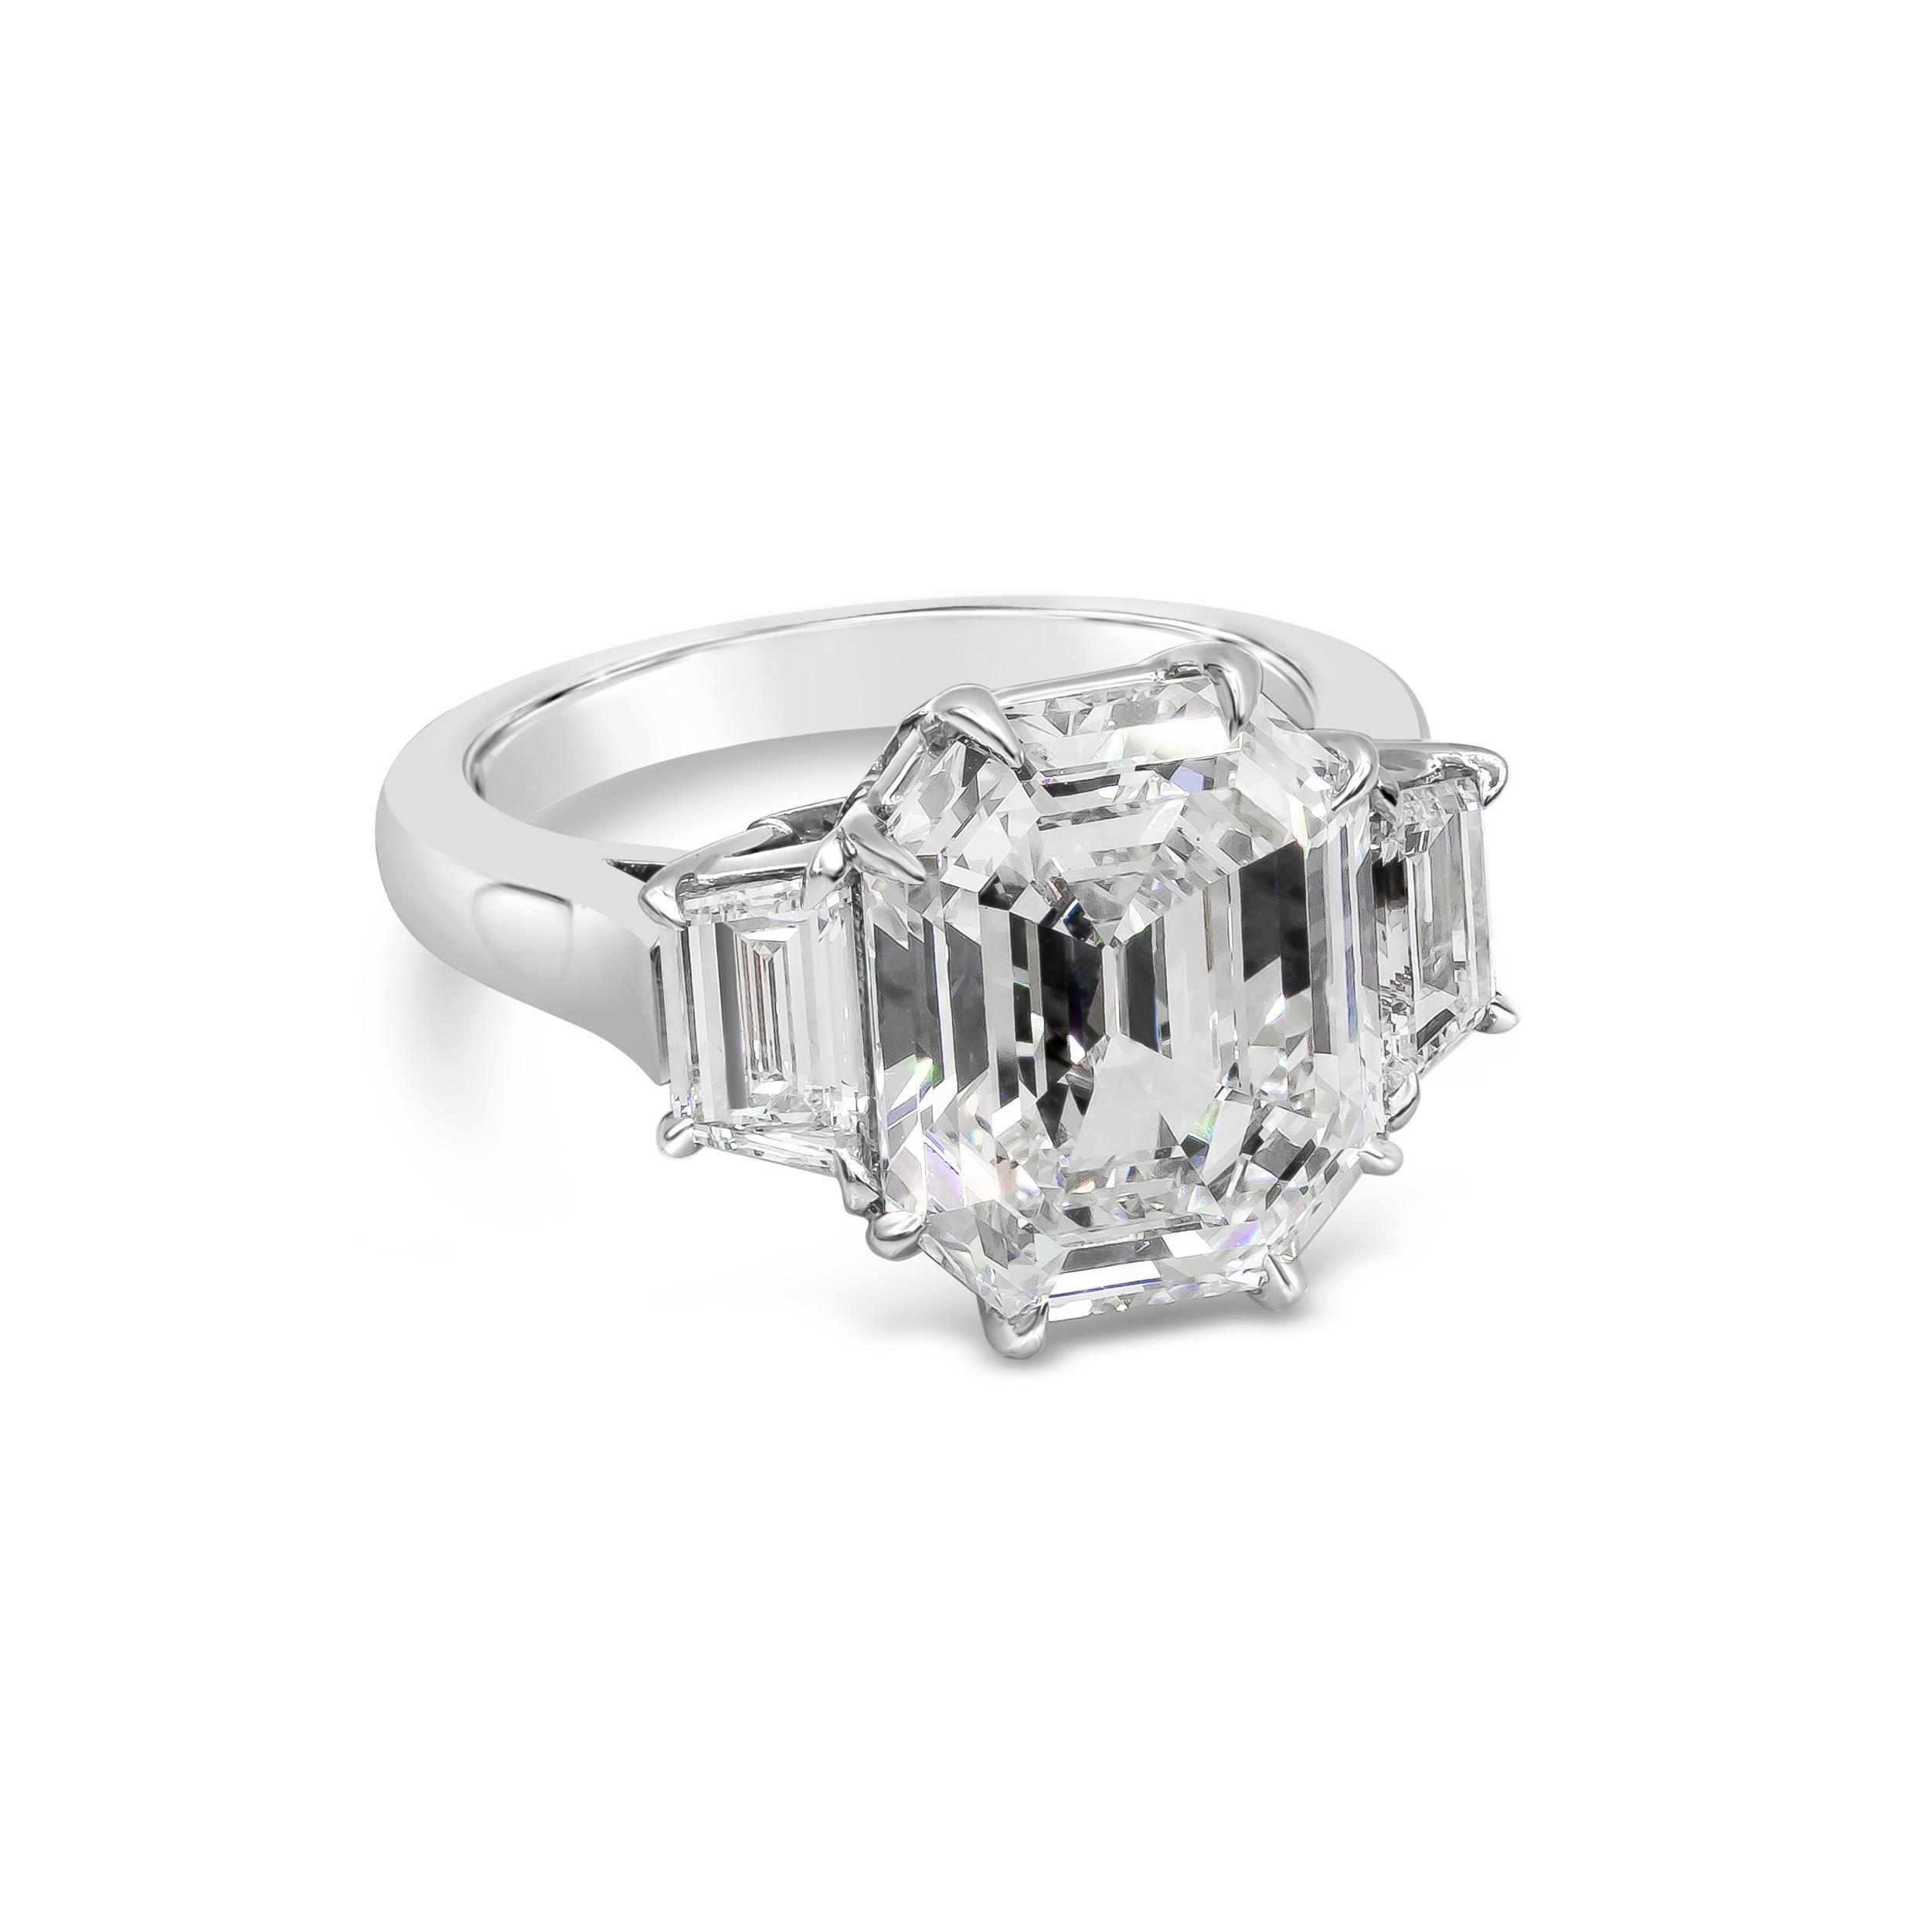 Ein eleganter und einzigartiger GIA-zertifizierter achteckiger Diamant im Stufenschliff mit einem Gewicht von 6,08 Karat, gefasst in einem polierten Platinkorb mit acht Zacken und flankiert von zwei trapezförmigen Diamanten. Center Stein ist I Farbe